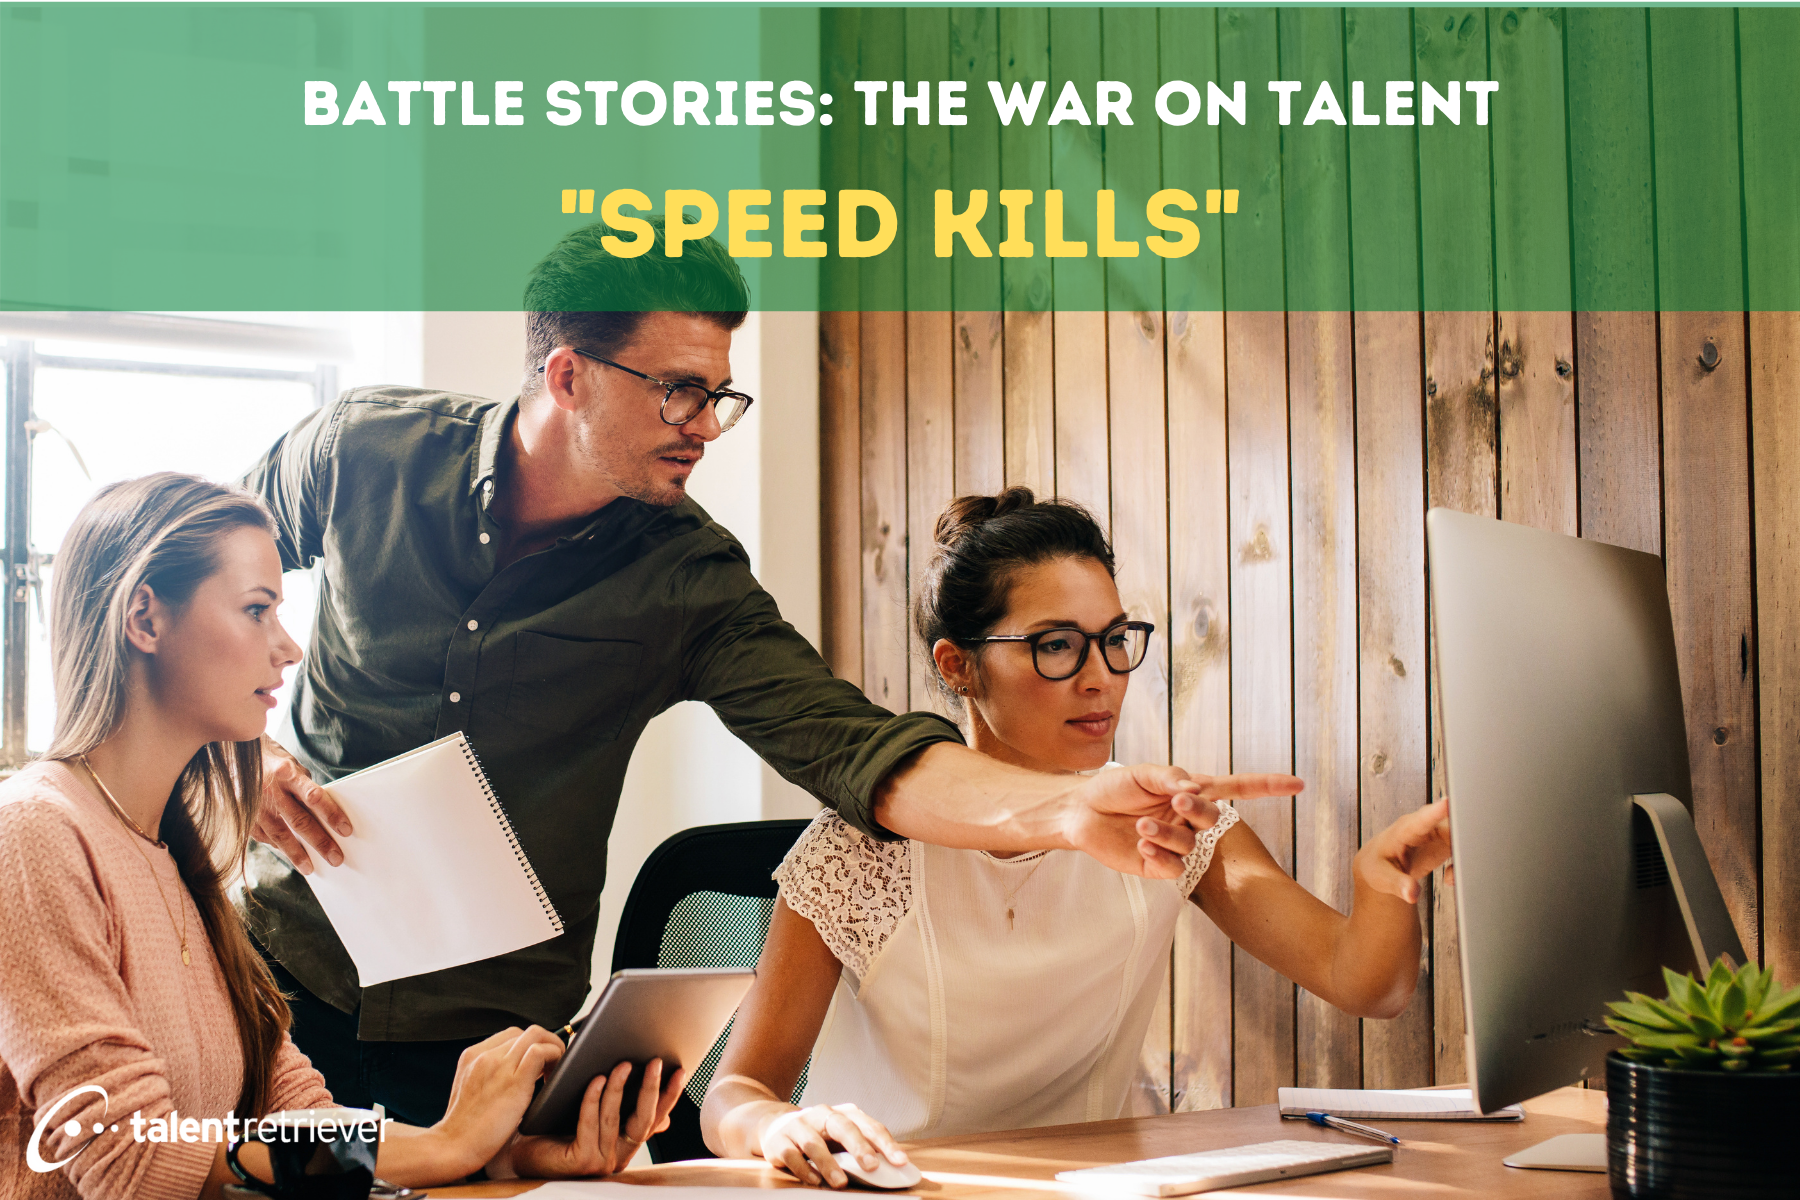 Battle Stories The War on Talent - Speed Kills (1)